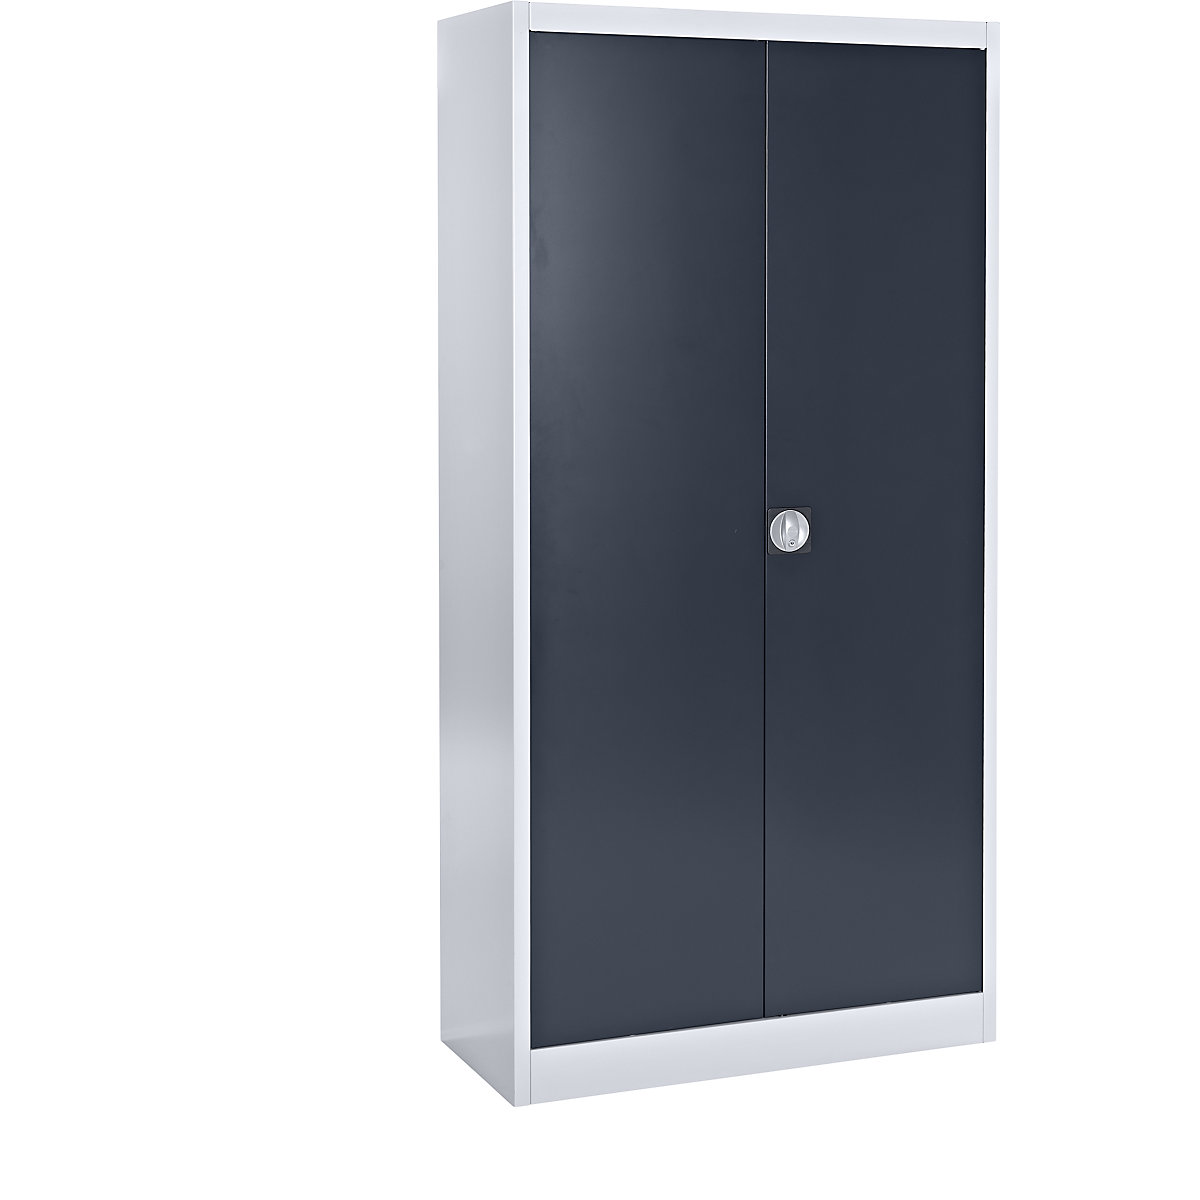 Čelični ormar sa zakretnim vratima – mauser, 4 police, dubina 420 mm, u aluminij bijeloj / antracit sivoj boji-8